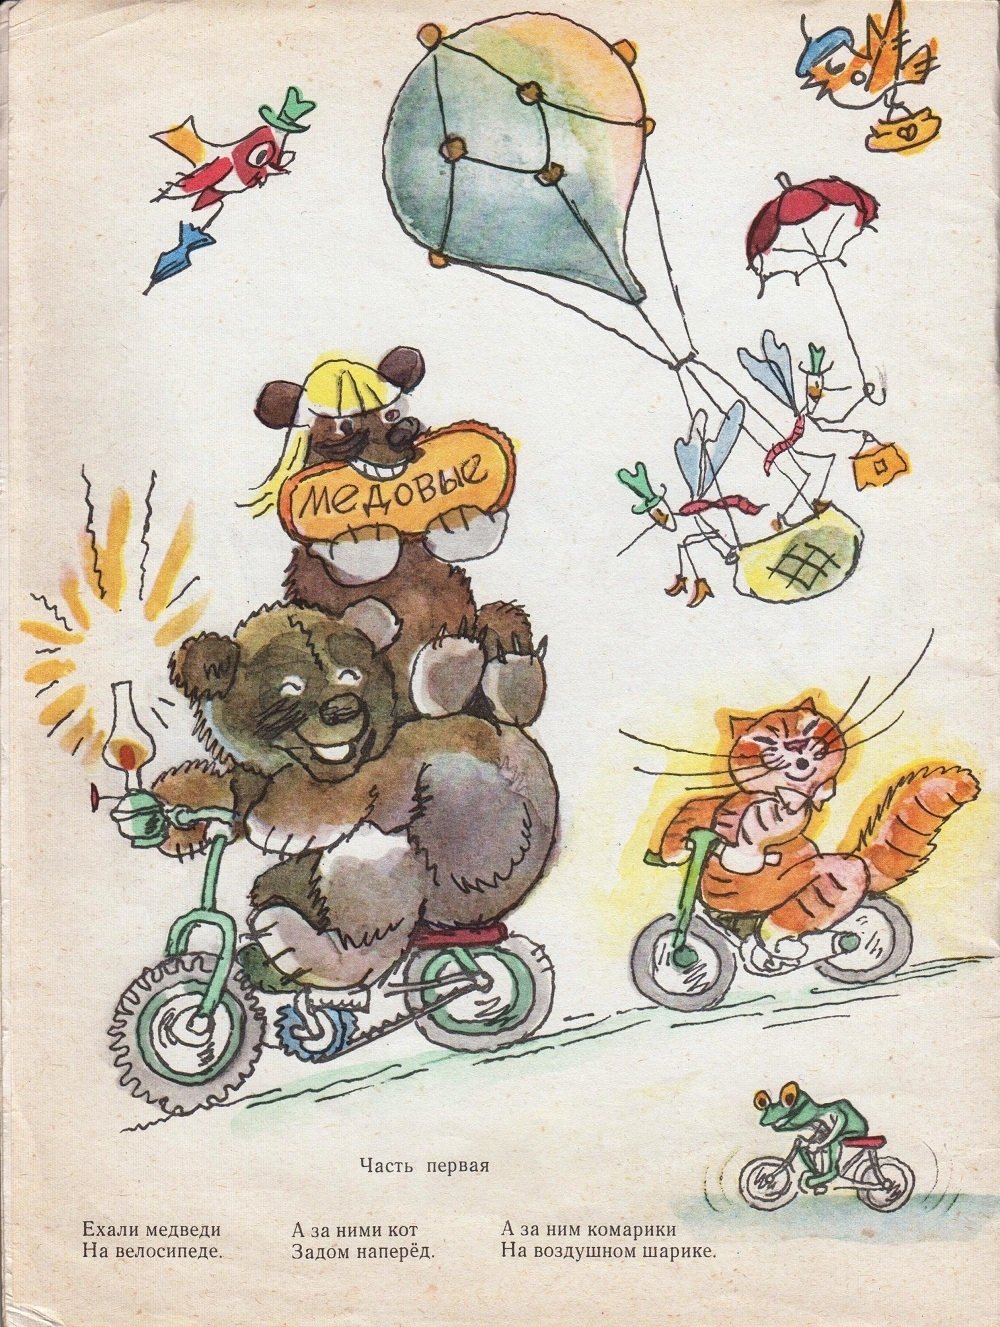 Таракан тараканище ехали медведи на велосипеде. Тараканище Чуковский ехали медведи на велосипеде. Корнея Чуковского Тараканище ехали медведи на велосипеде. Рисунки Чуковский комарики на воздушном шарике.